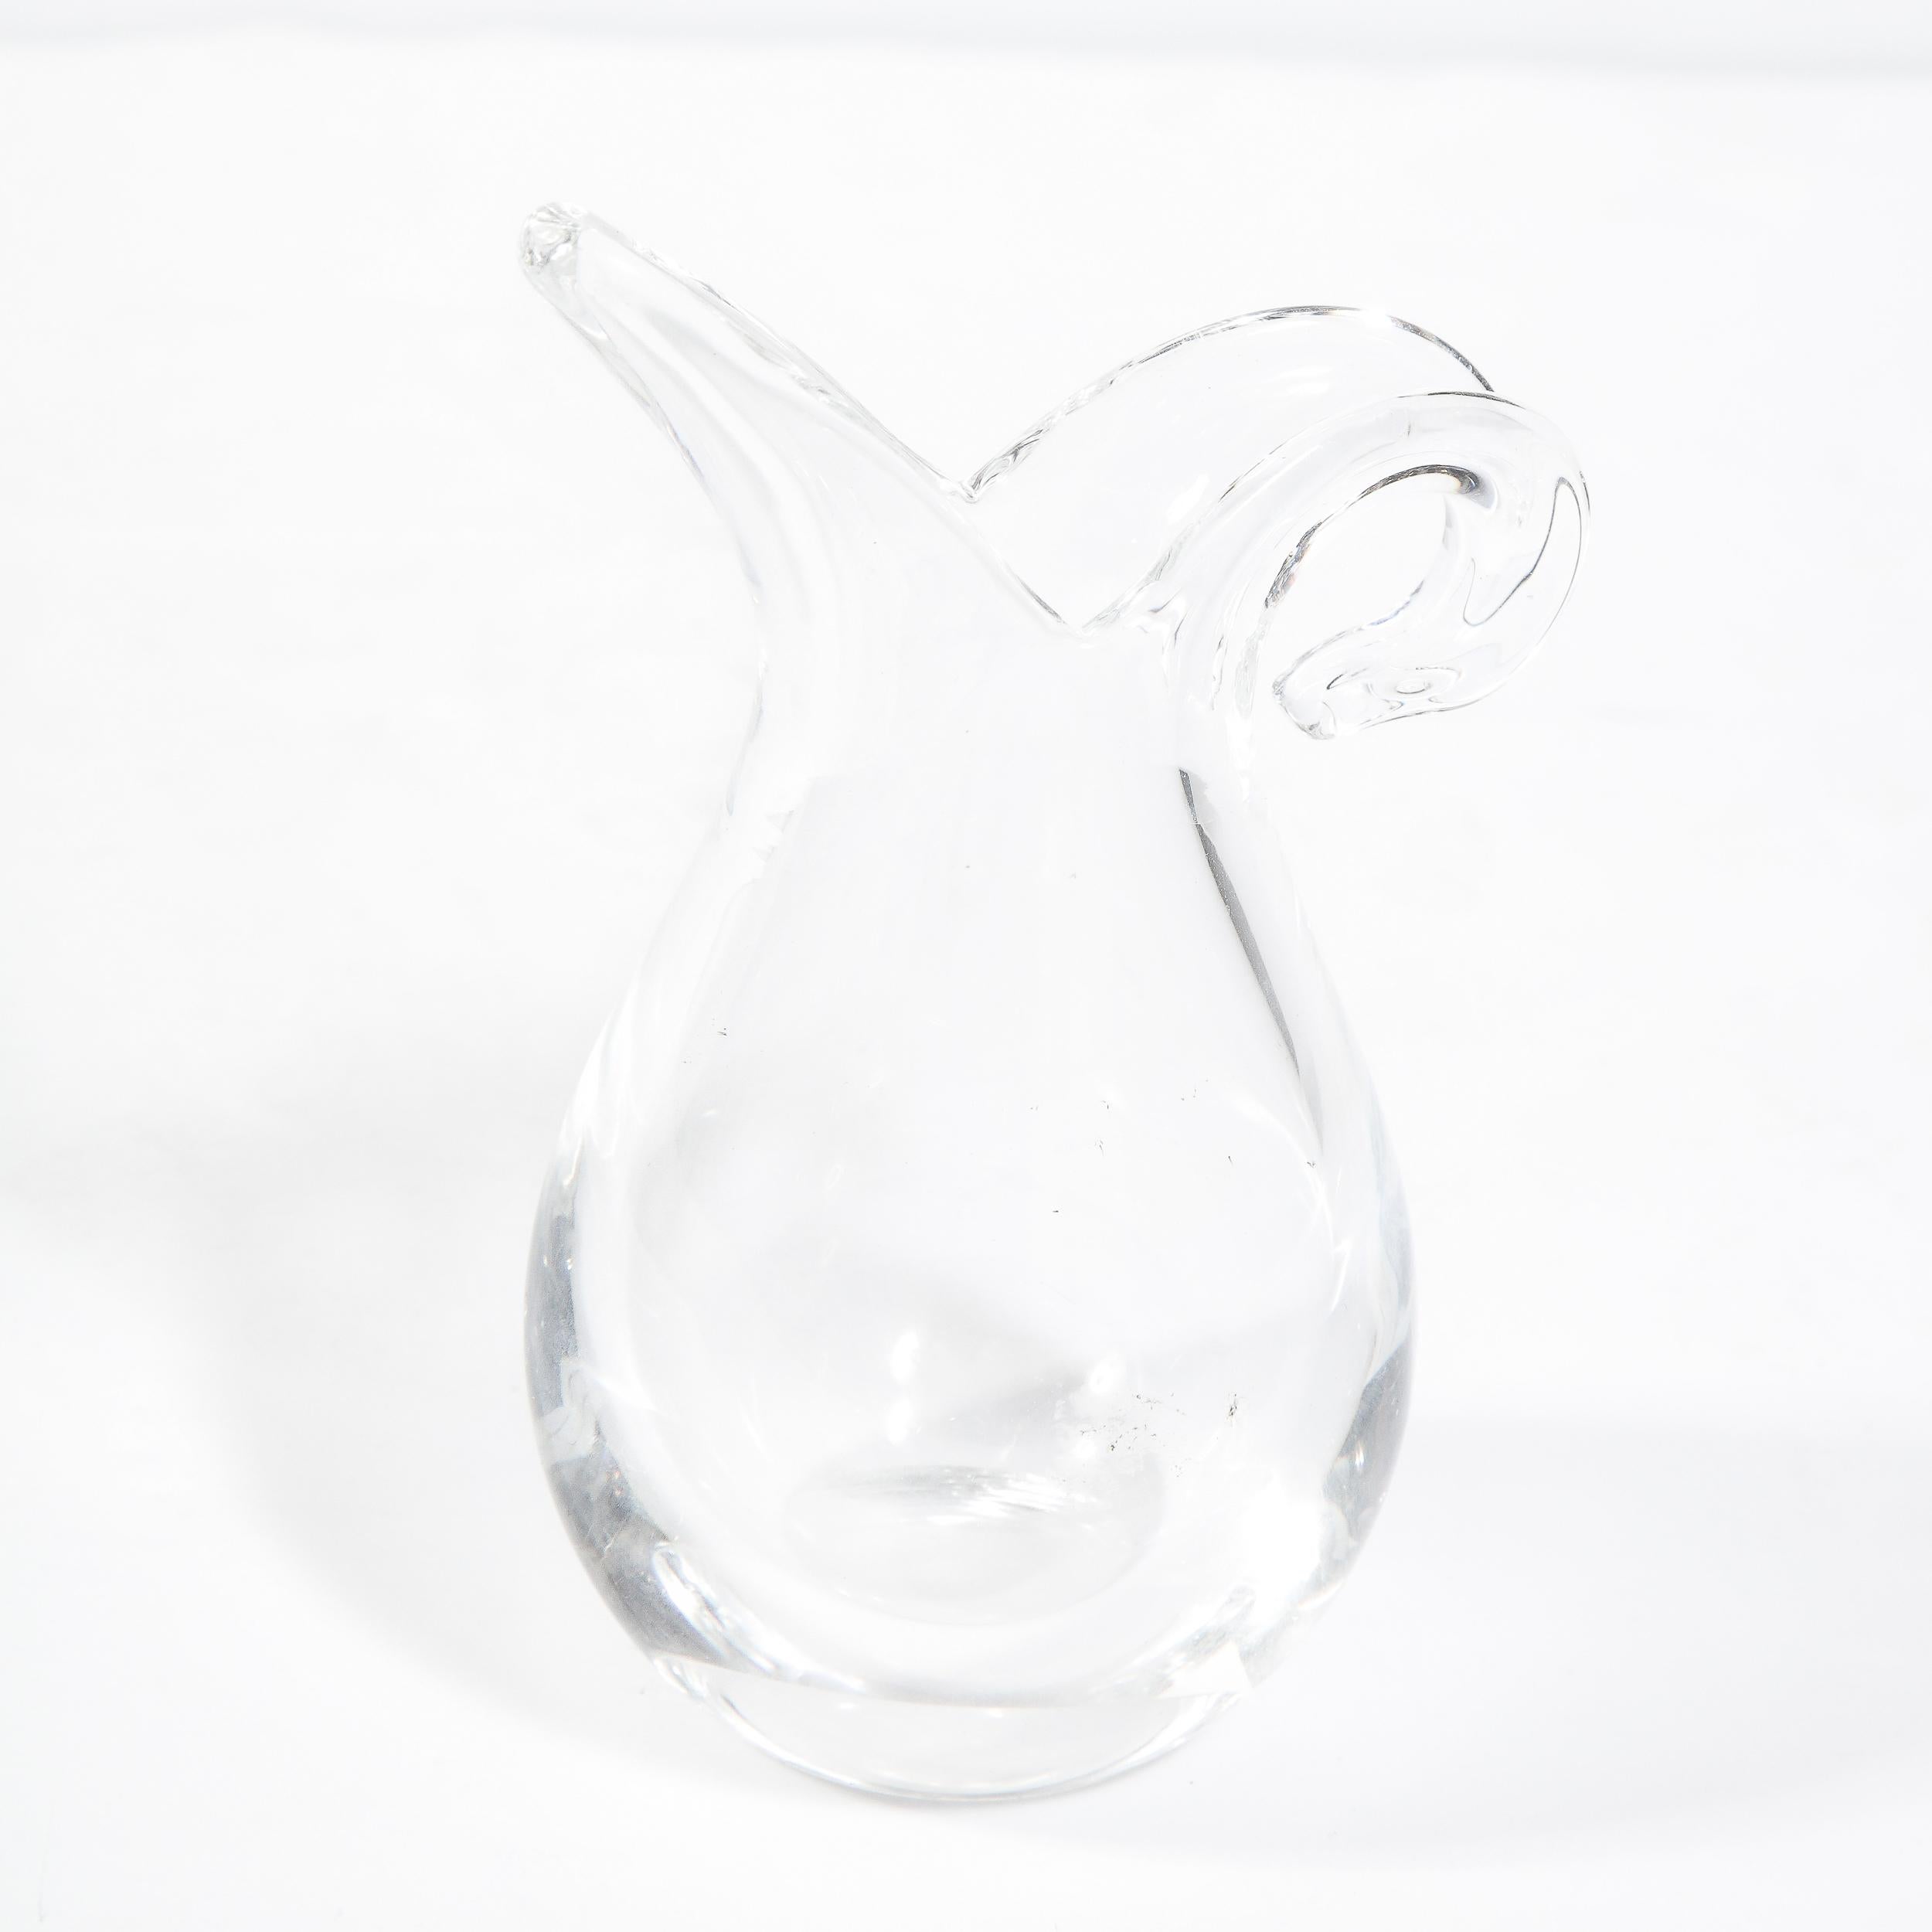 20th Century Modernist Hand Blown Translucent Glass Teardrop Vase by Steuben